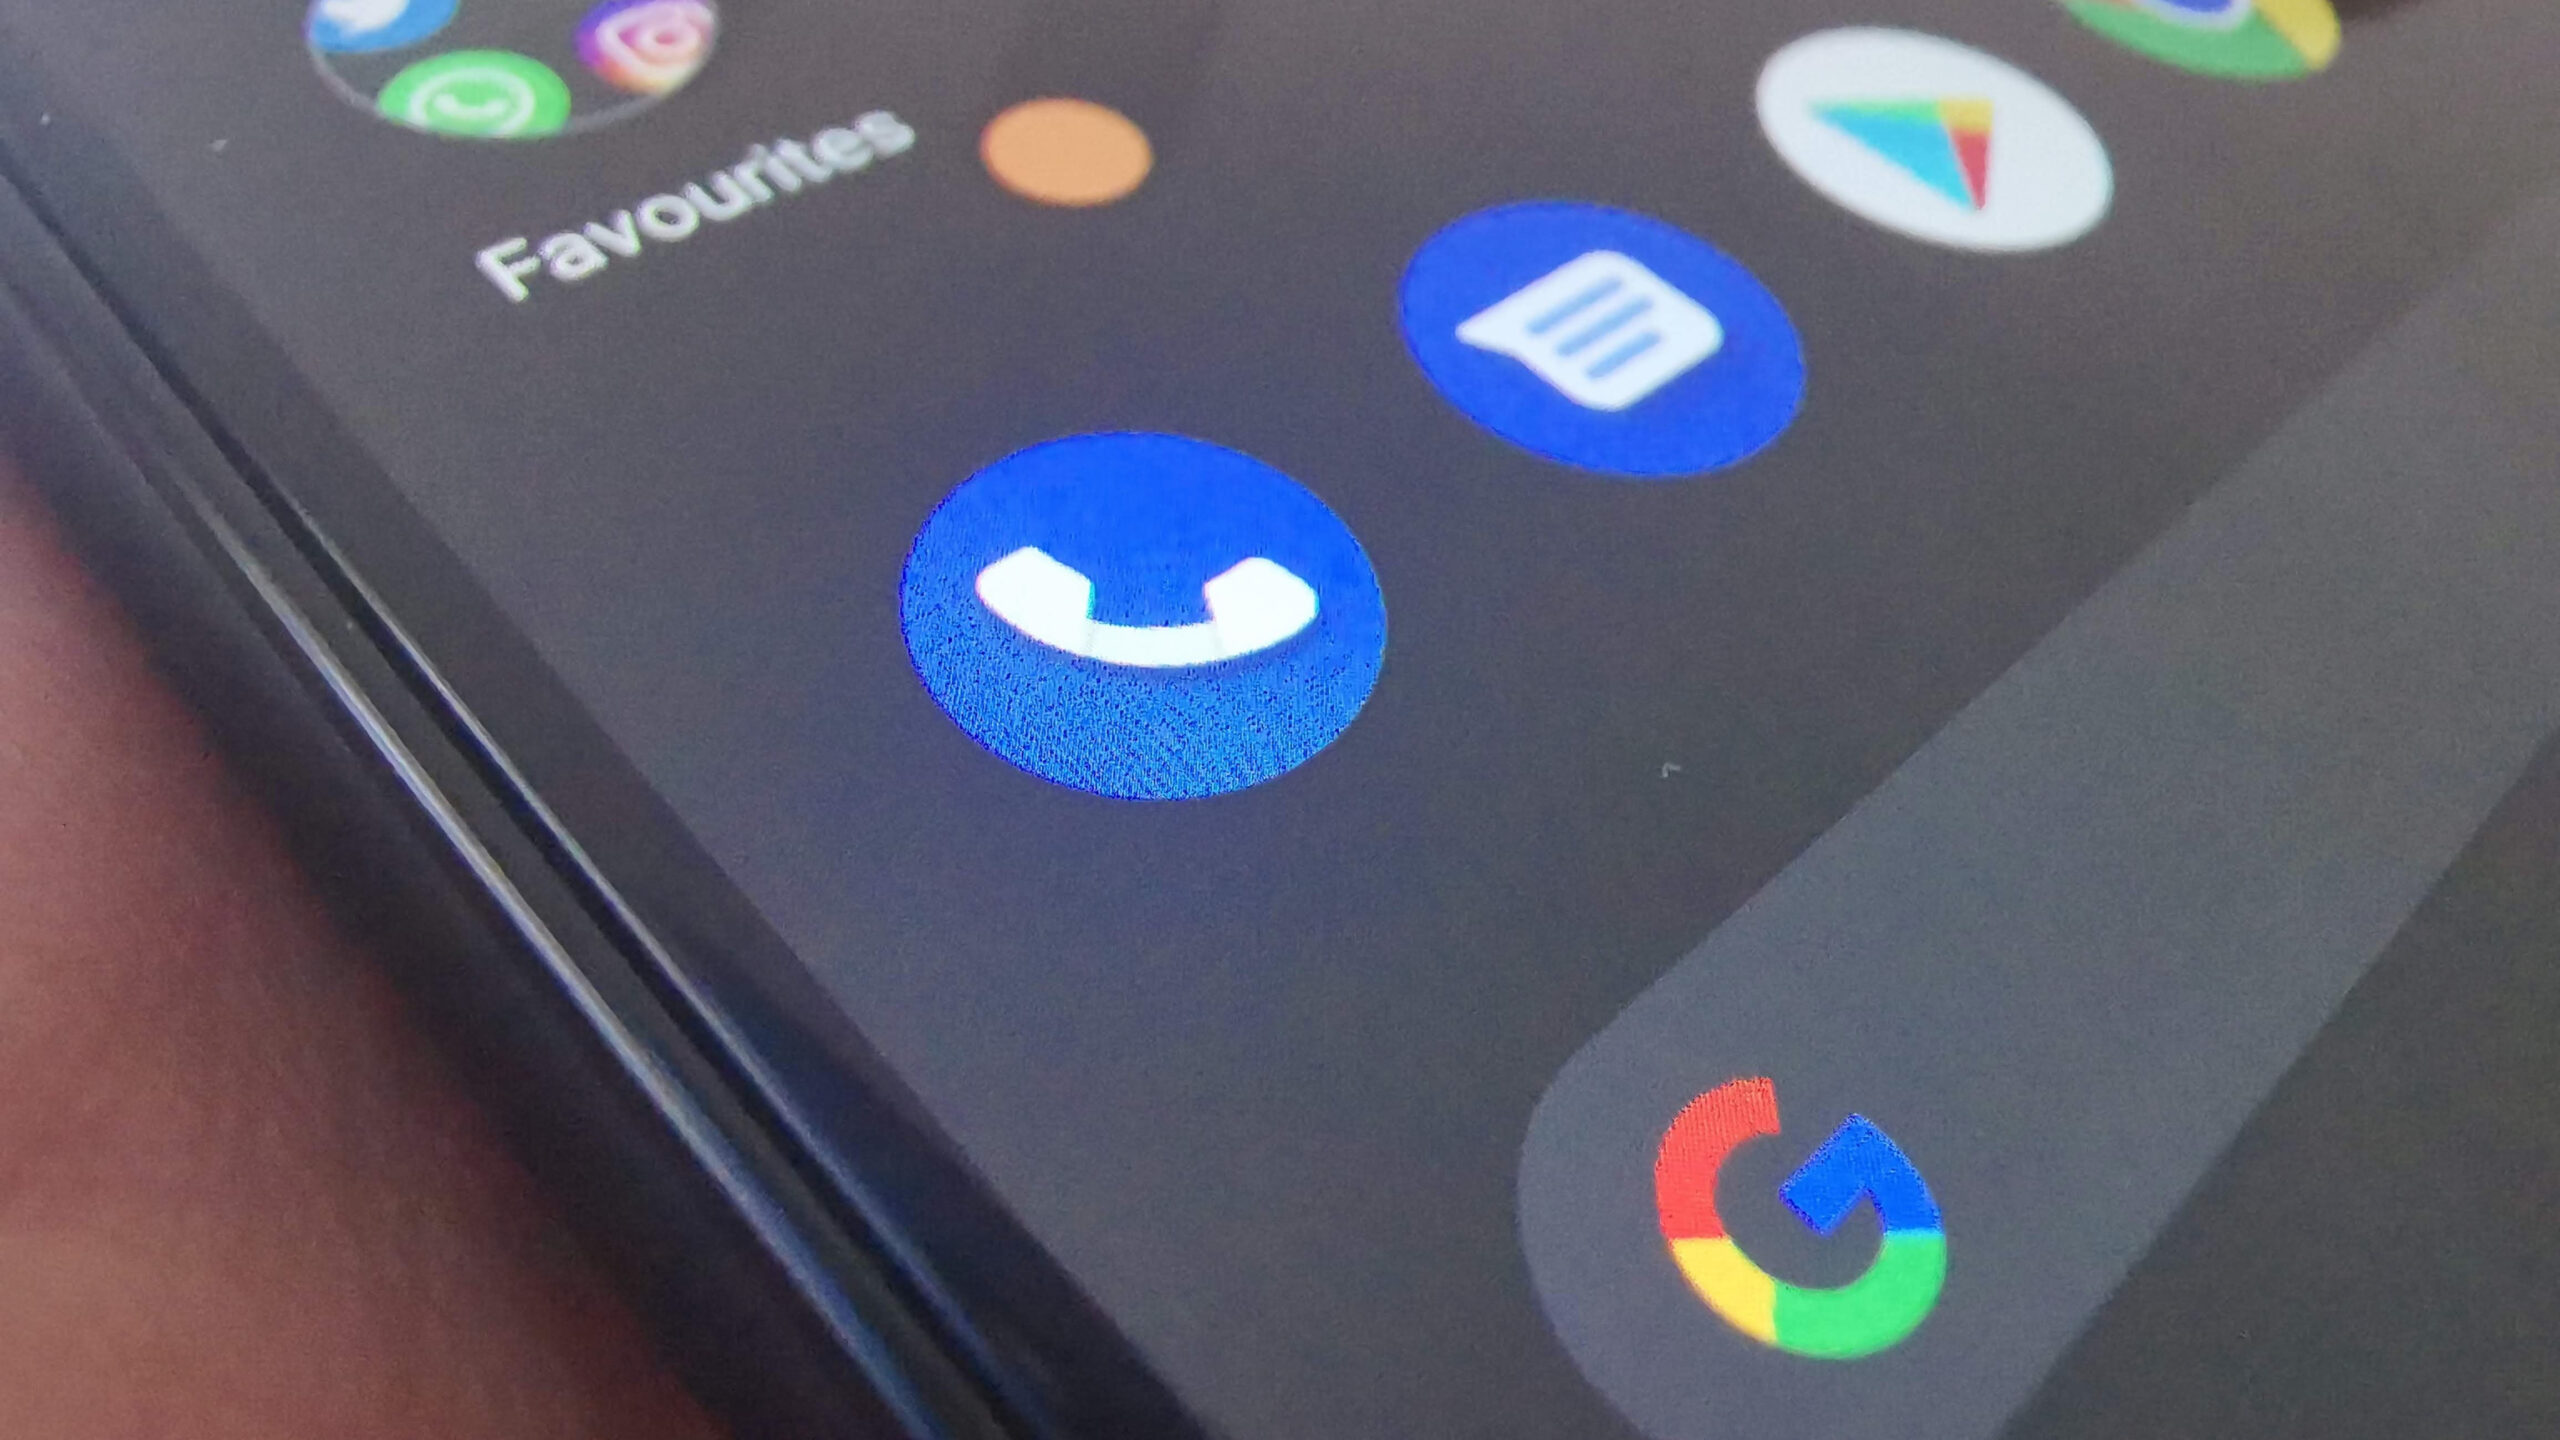 Google eine Nummer: Google Phone App testet eine neue Funktion - Suche nach unbekannter Nummer